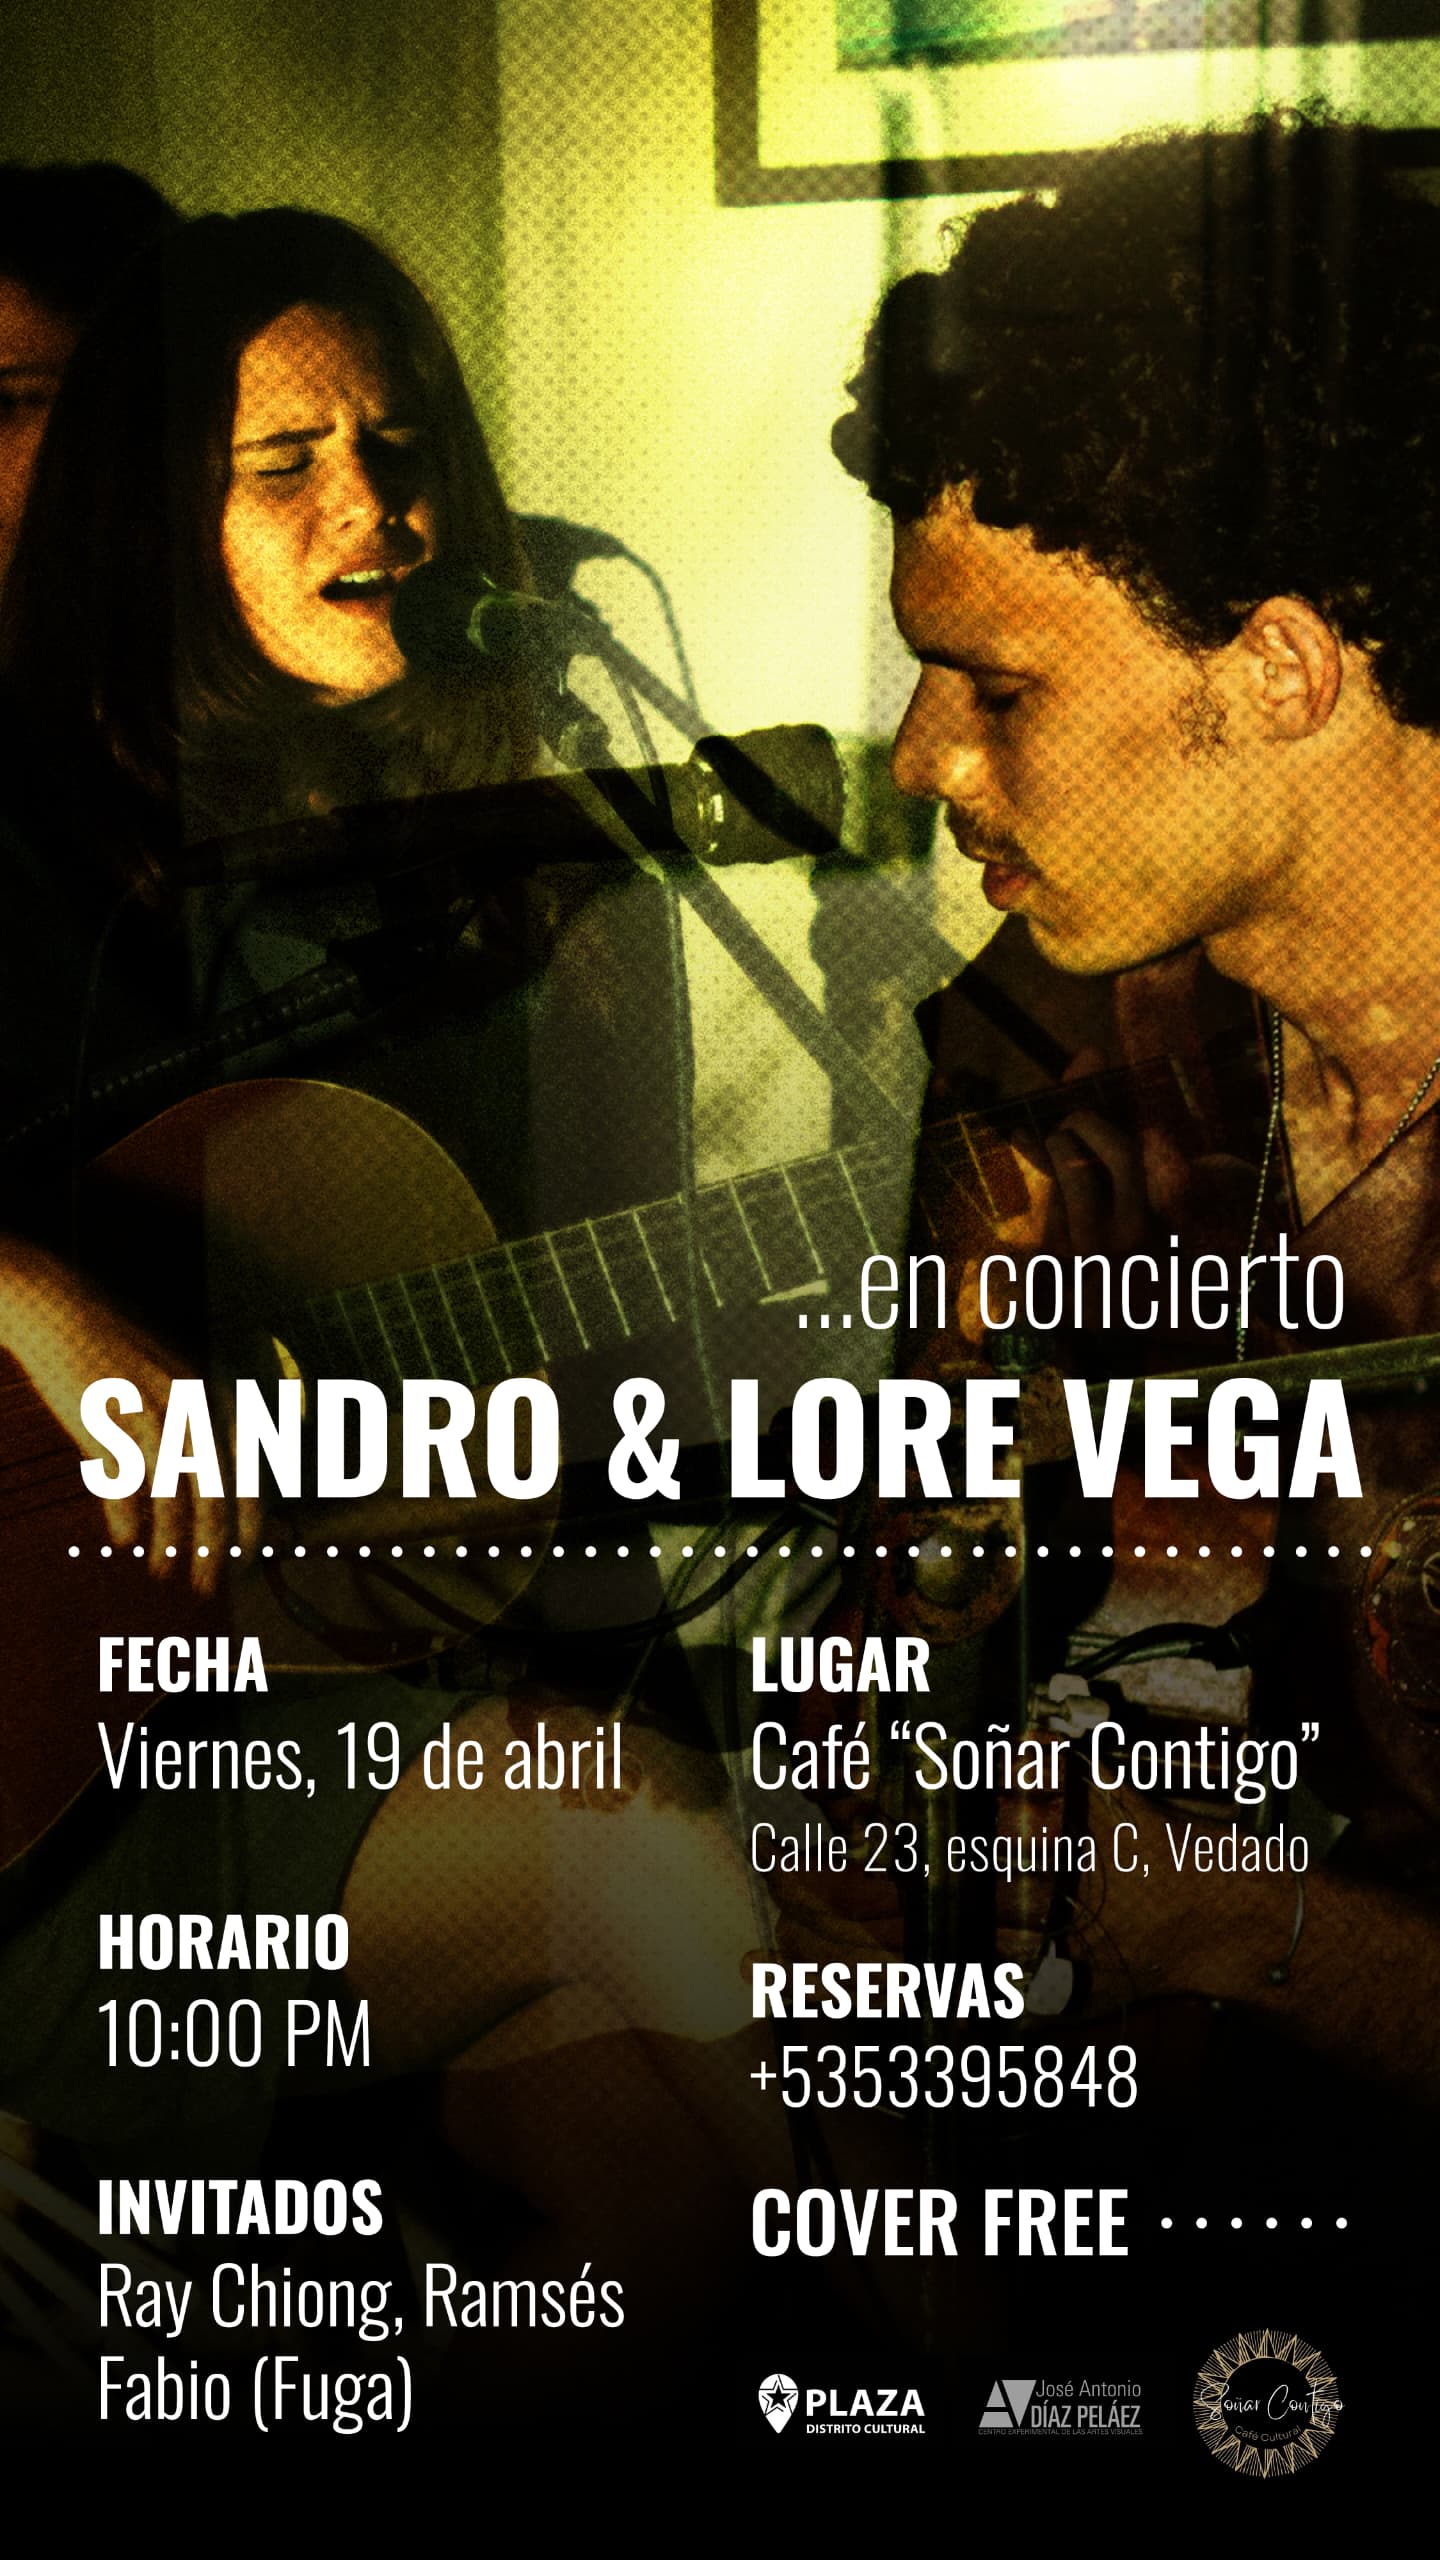 Sandro y Lore vega en concierto